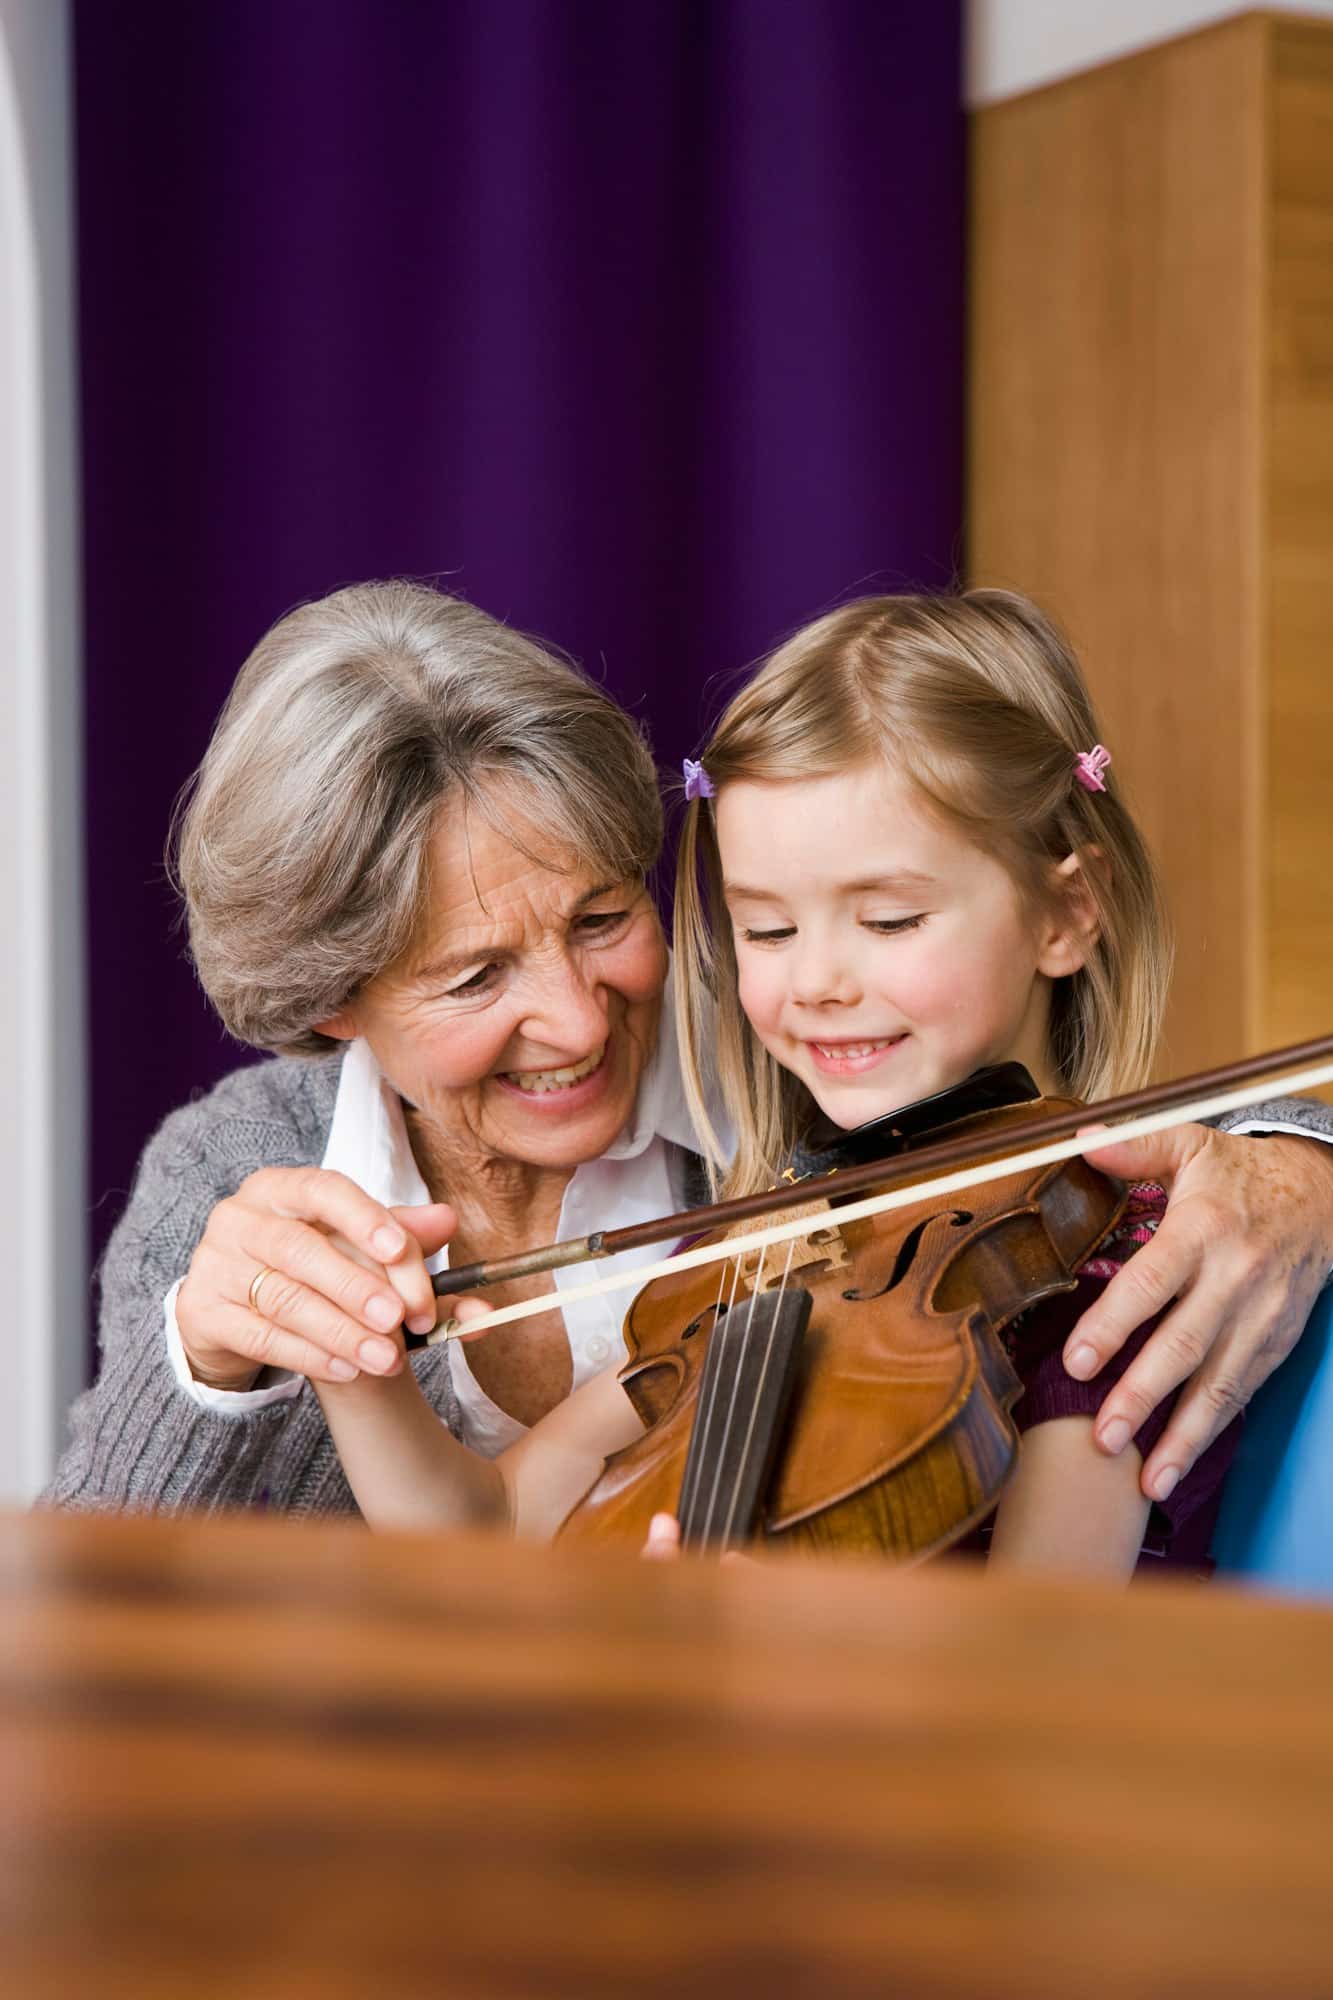 grandma teaching grandchild music